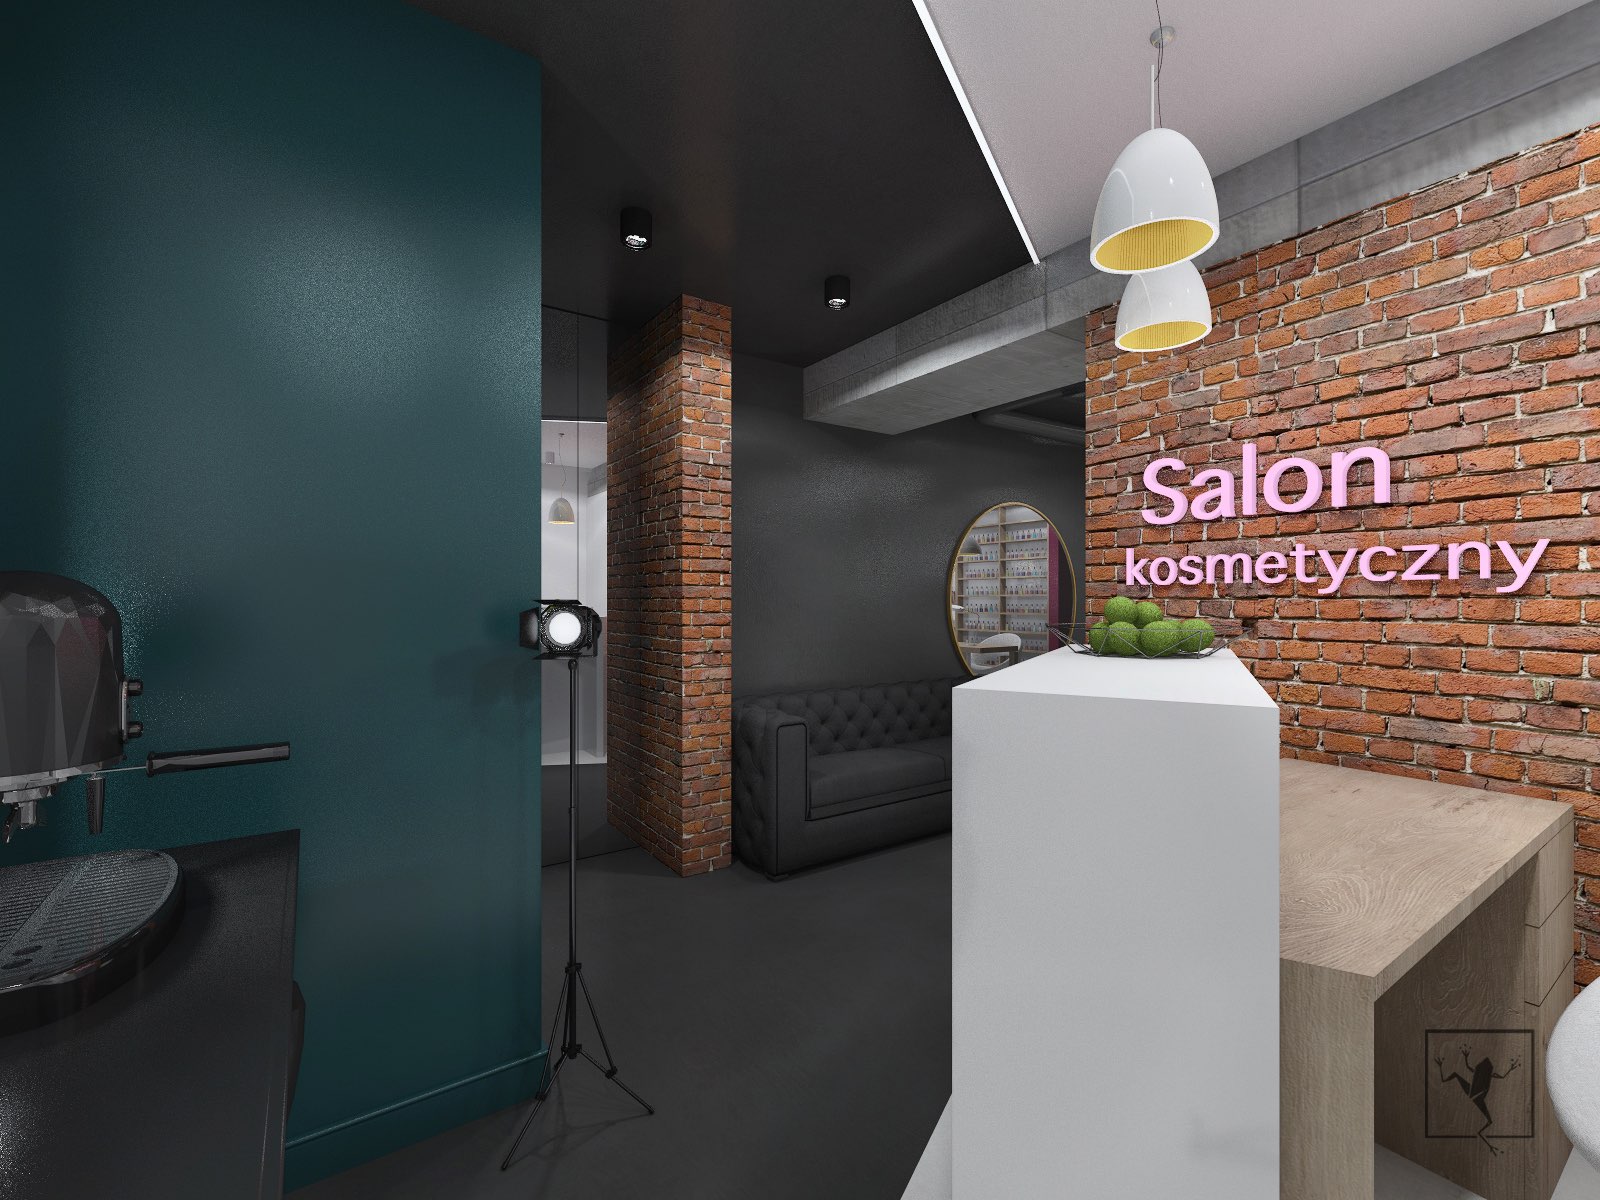 Salon Kosmetyczny w Kielcach | Frog Studio - projektowanie wnętrz